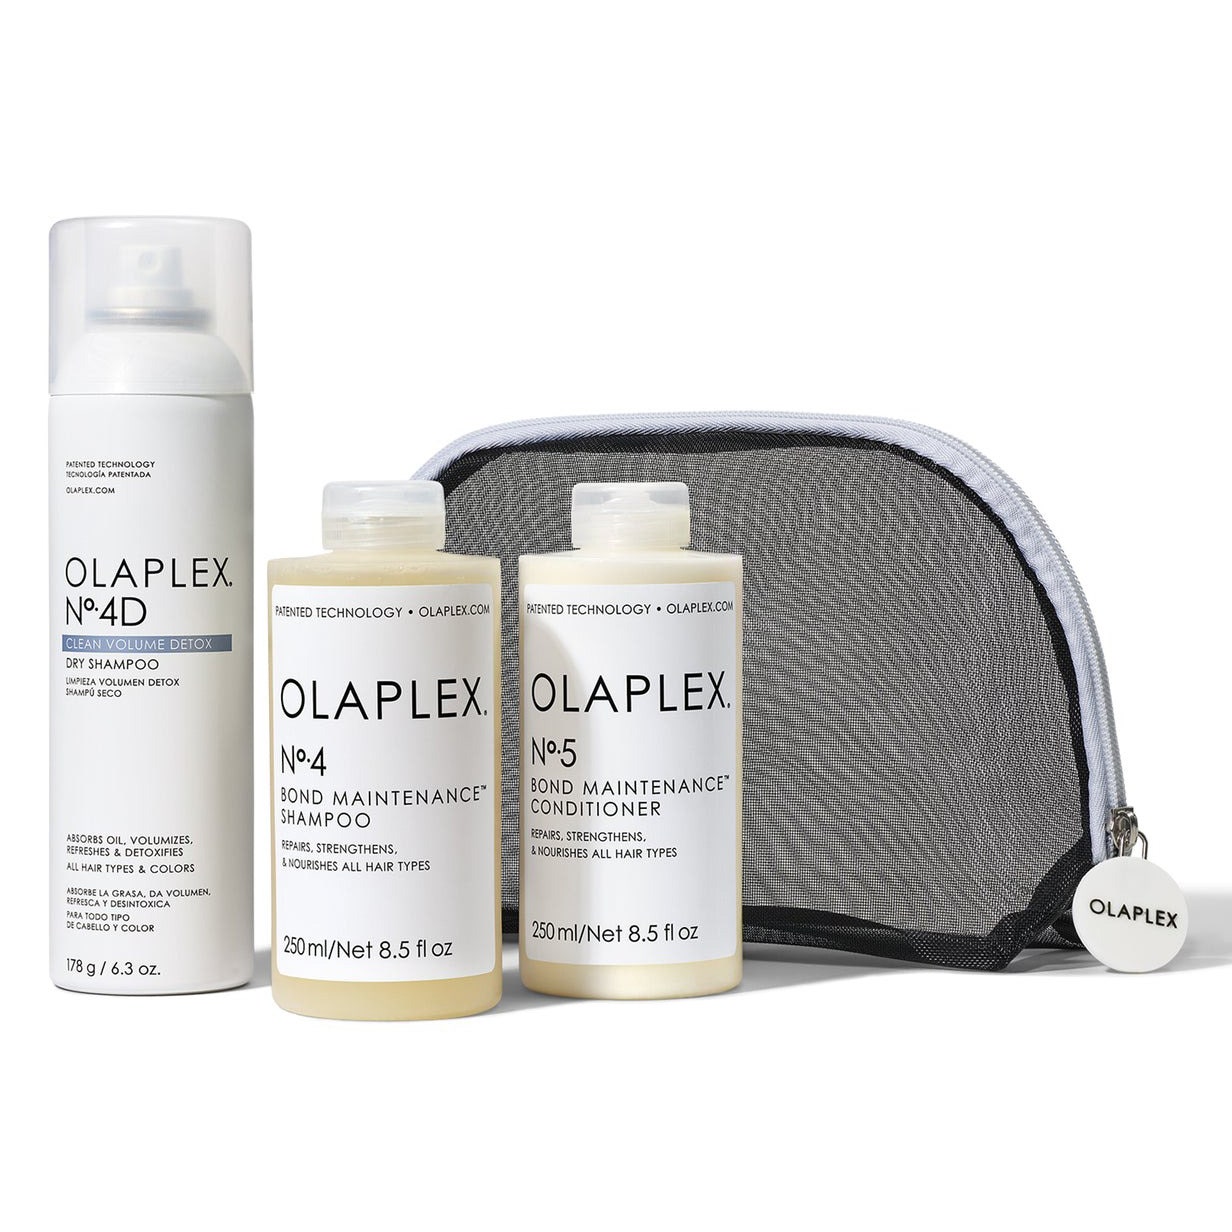 Olaplex Weightless Body Clean Hair Kit, drei Flaschen und Netzbeutel auf weißem Hintergrund